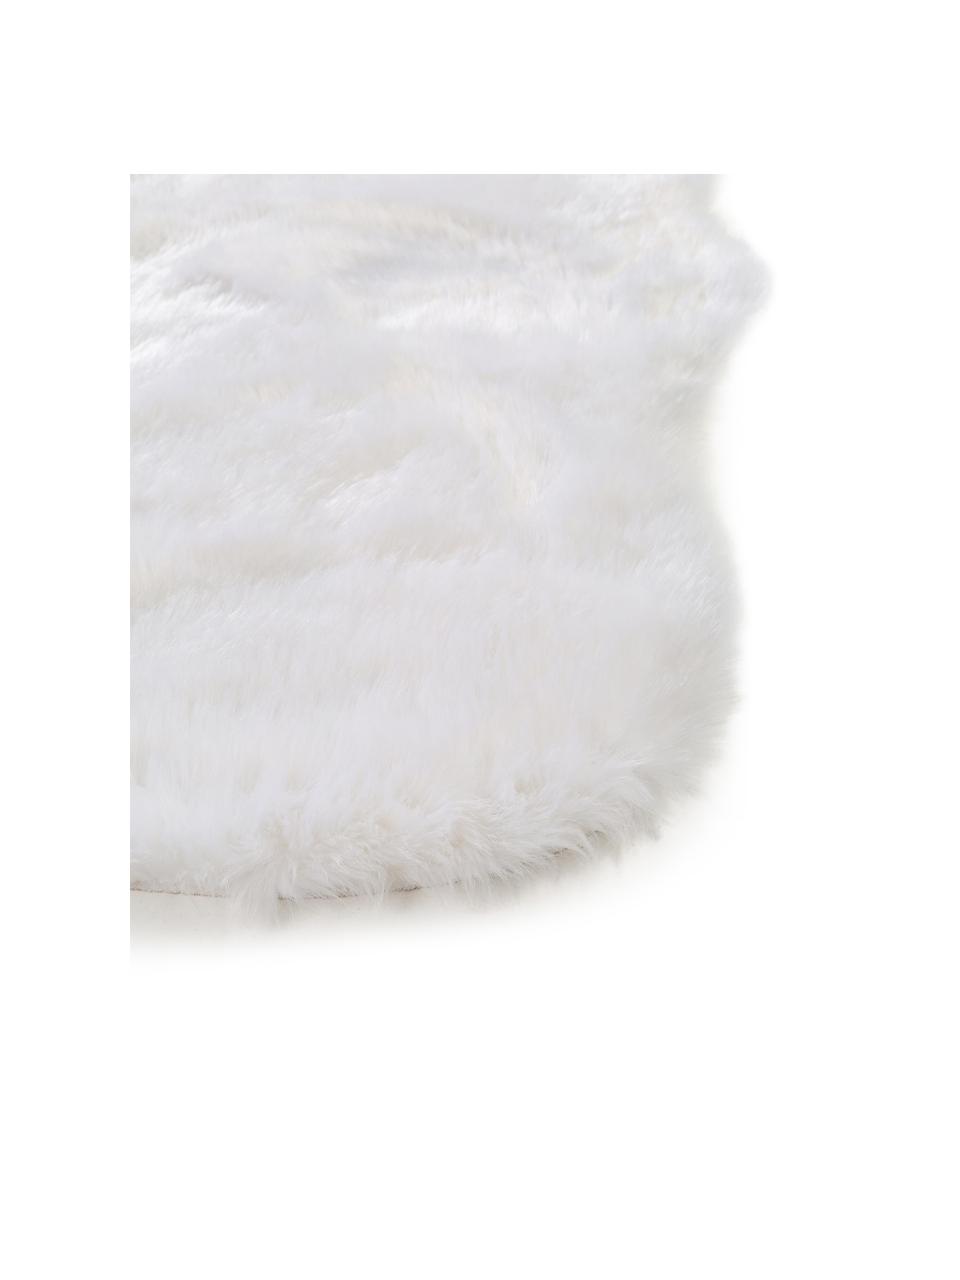 Tappeto morbido in ecopelliccia bianca Elmo, Retro: poliestere, Bianco, Larg. 140 x Lung. 200 cm (taglia S)